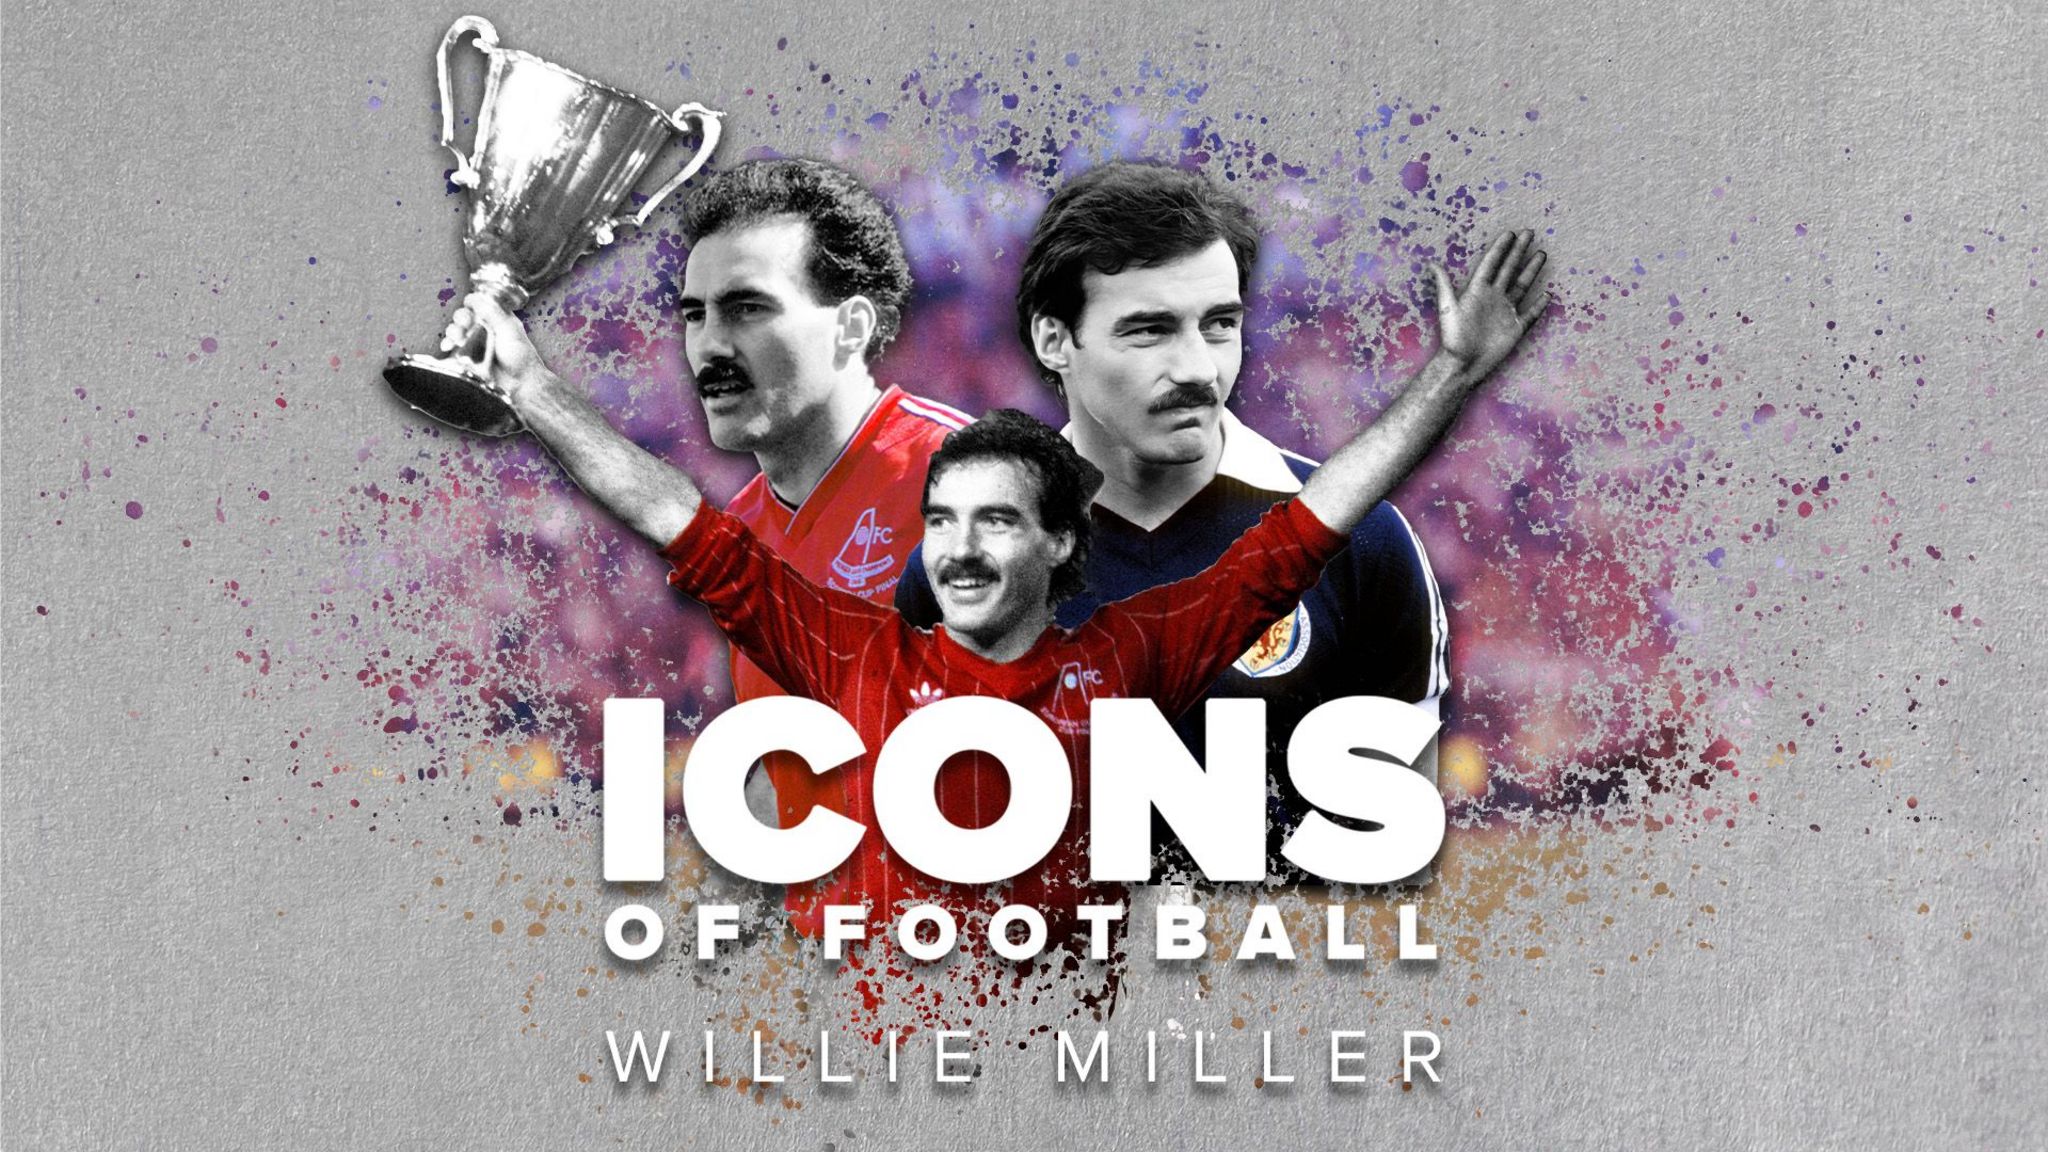 Willie Miller